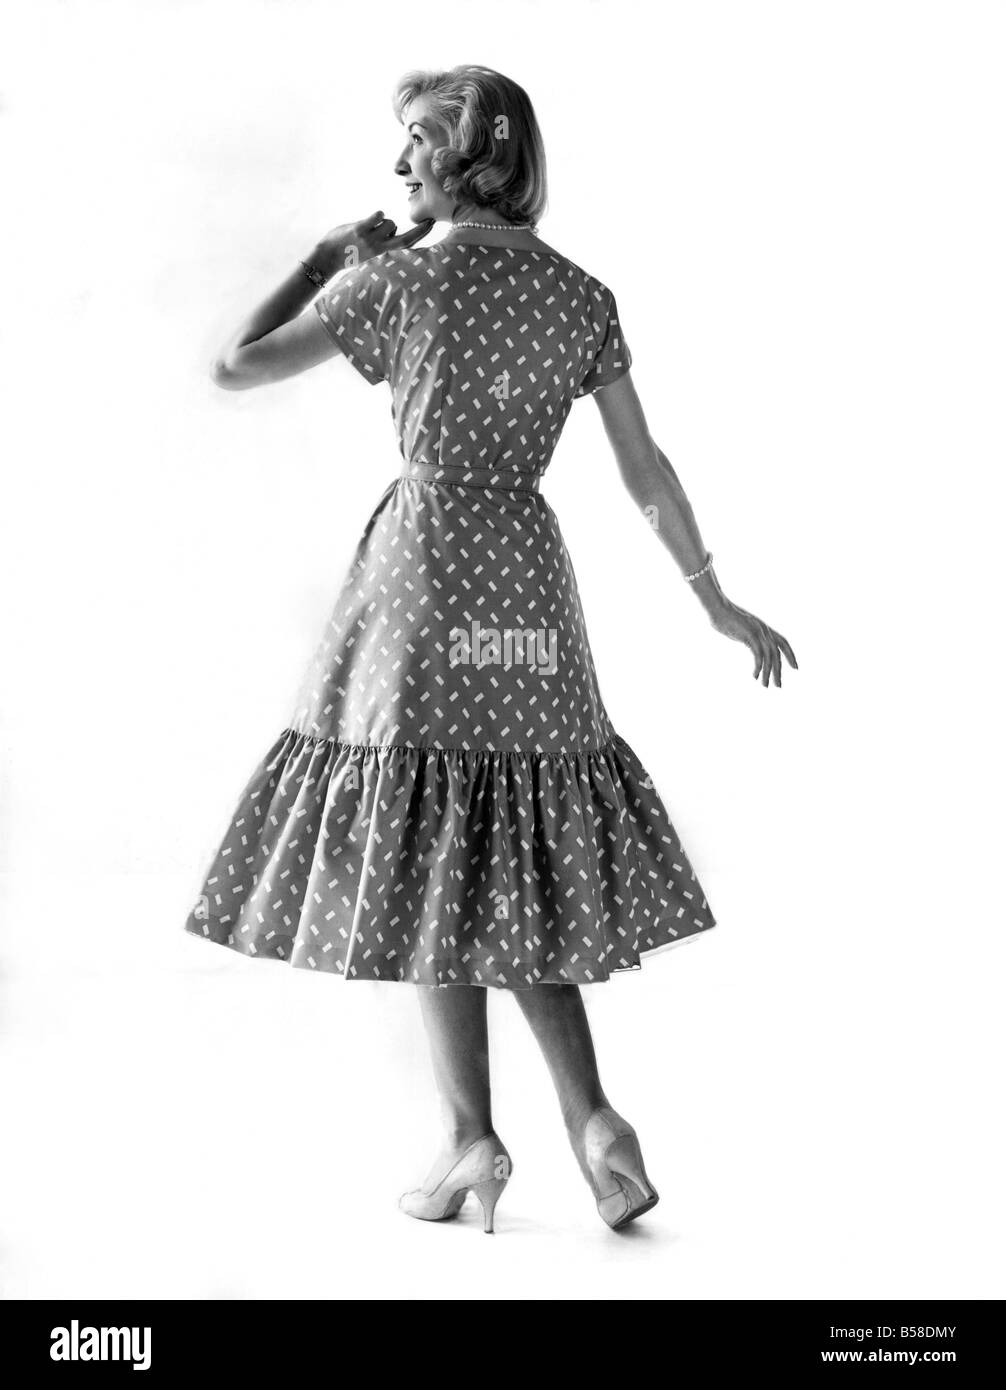 Kleidermode 1958. Audry Wayne Modellierung eine Muster Kleid mit Rüschen  Rock. Juli 1958 P006900 Stockfotografie - Alamy